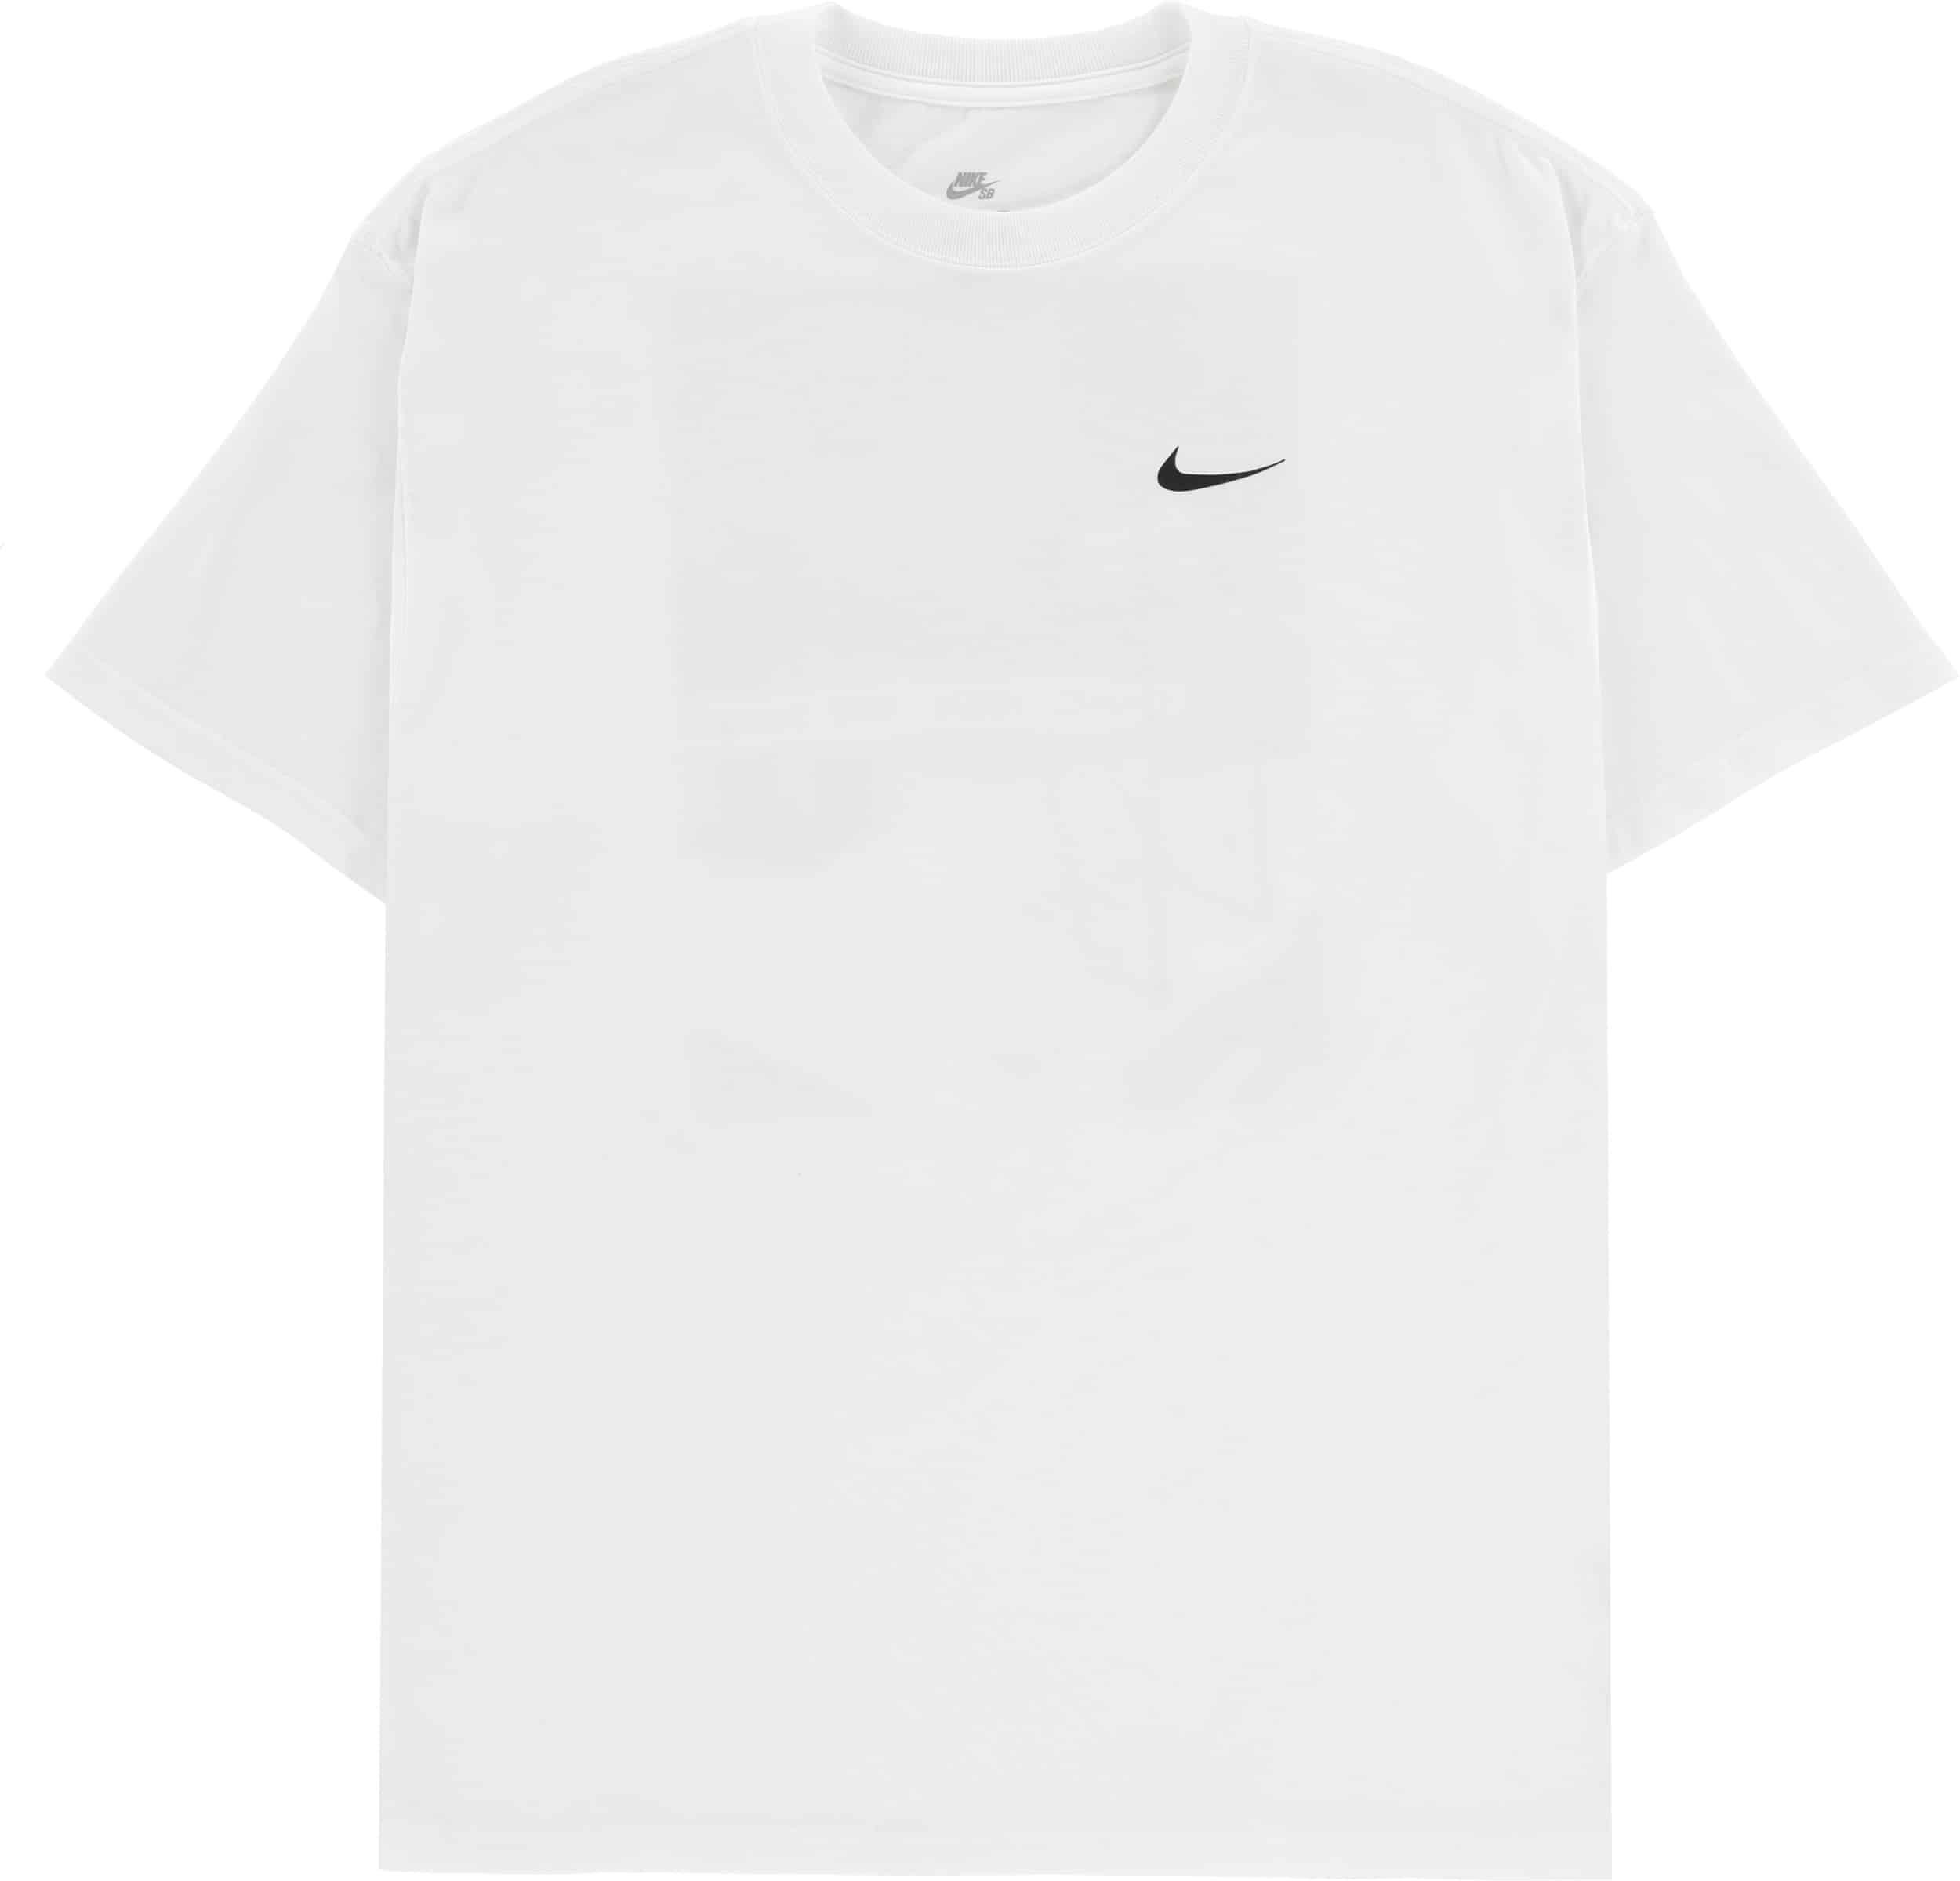 Nike SB Carwash T-Shirt - white | Tactics